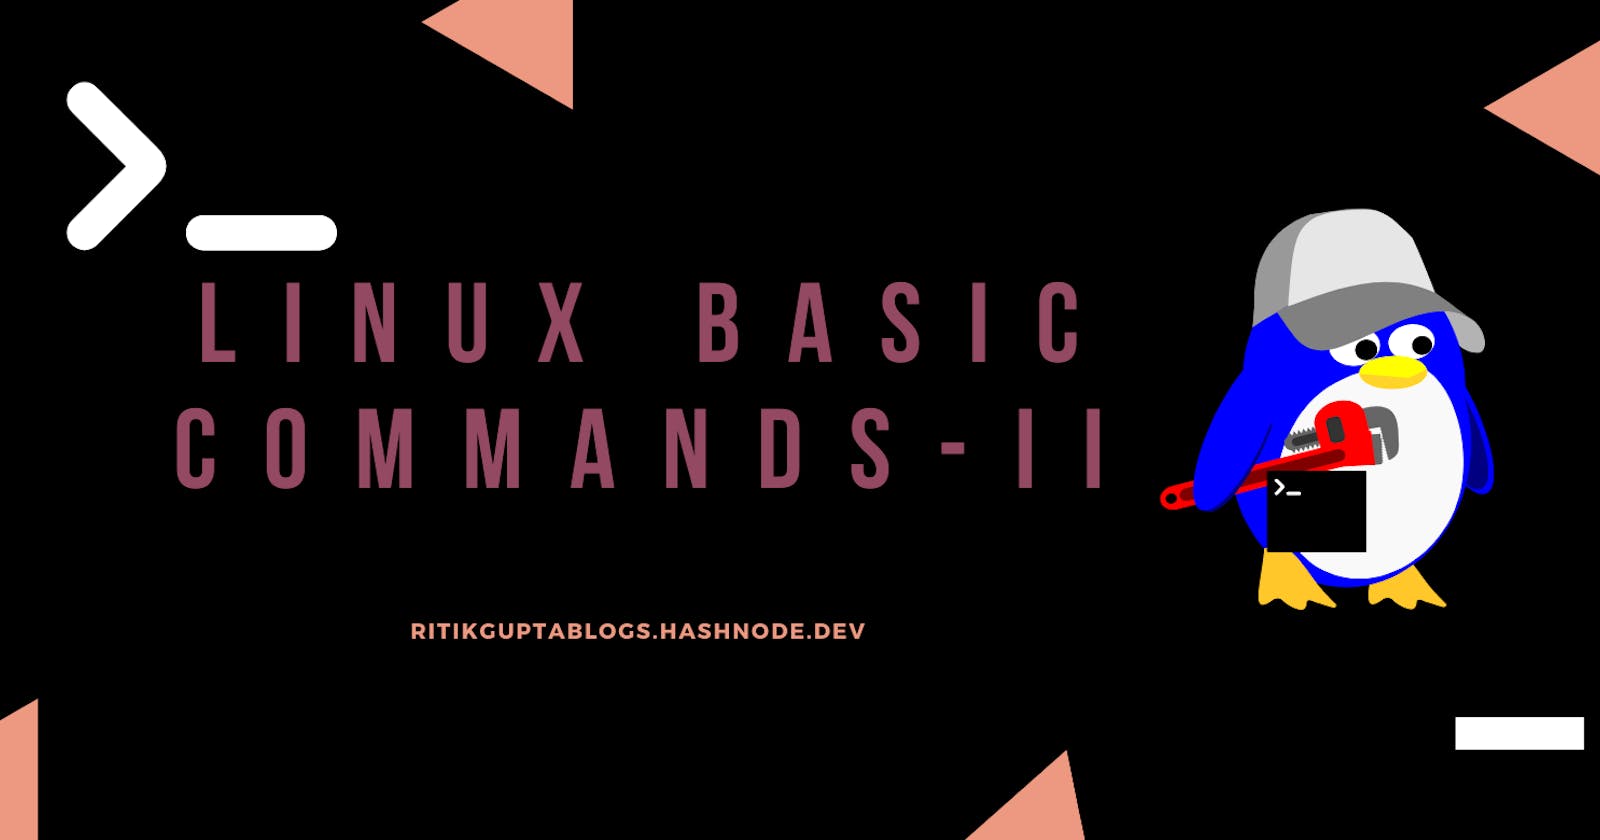 Basic Linux commands - II